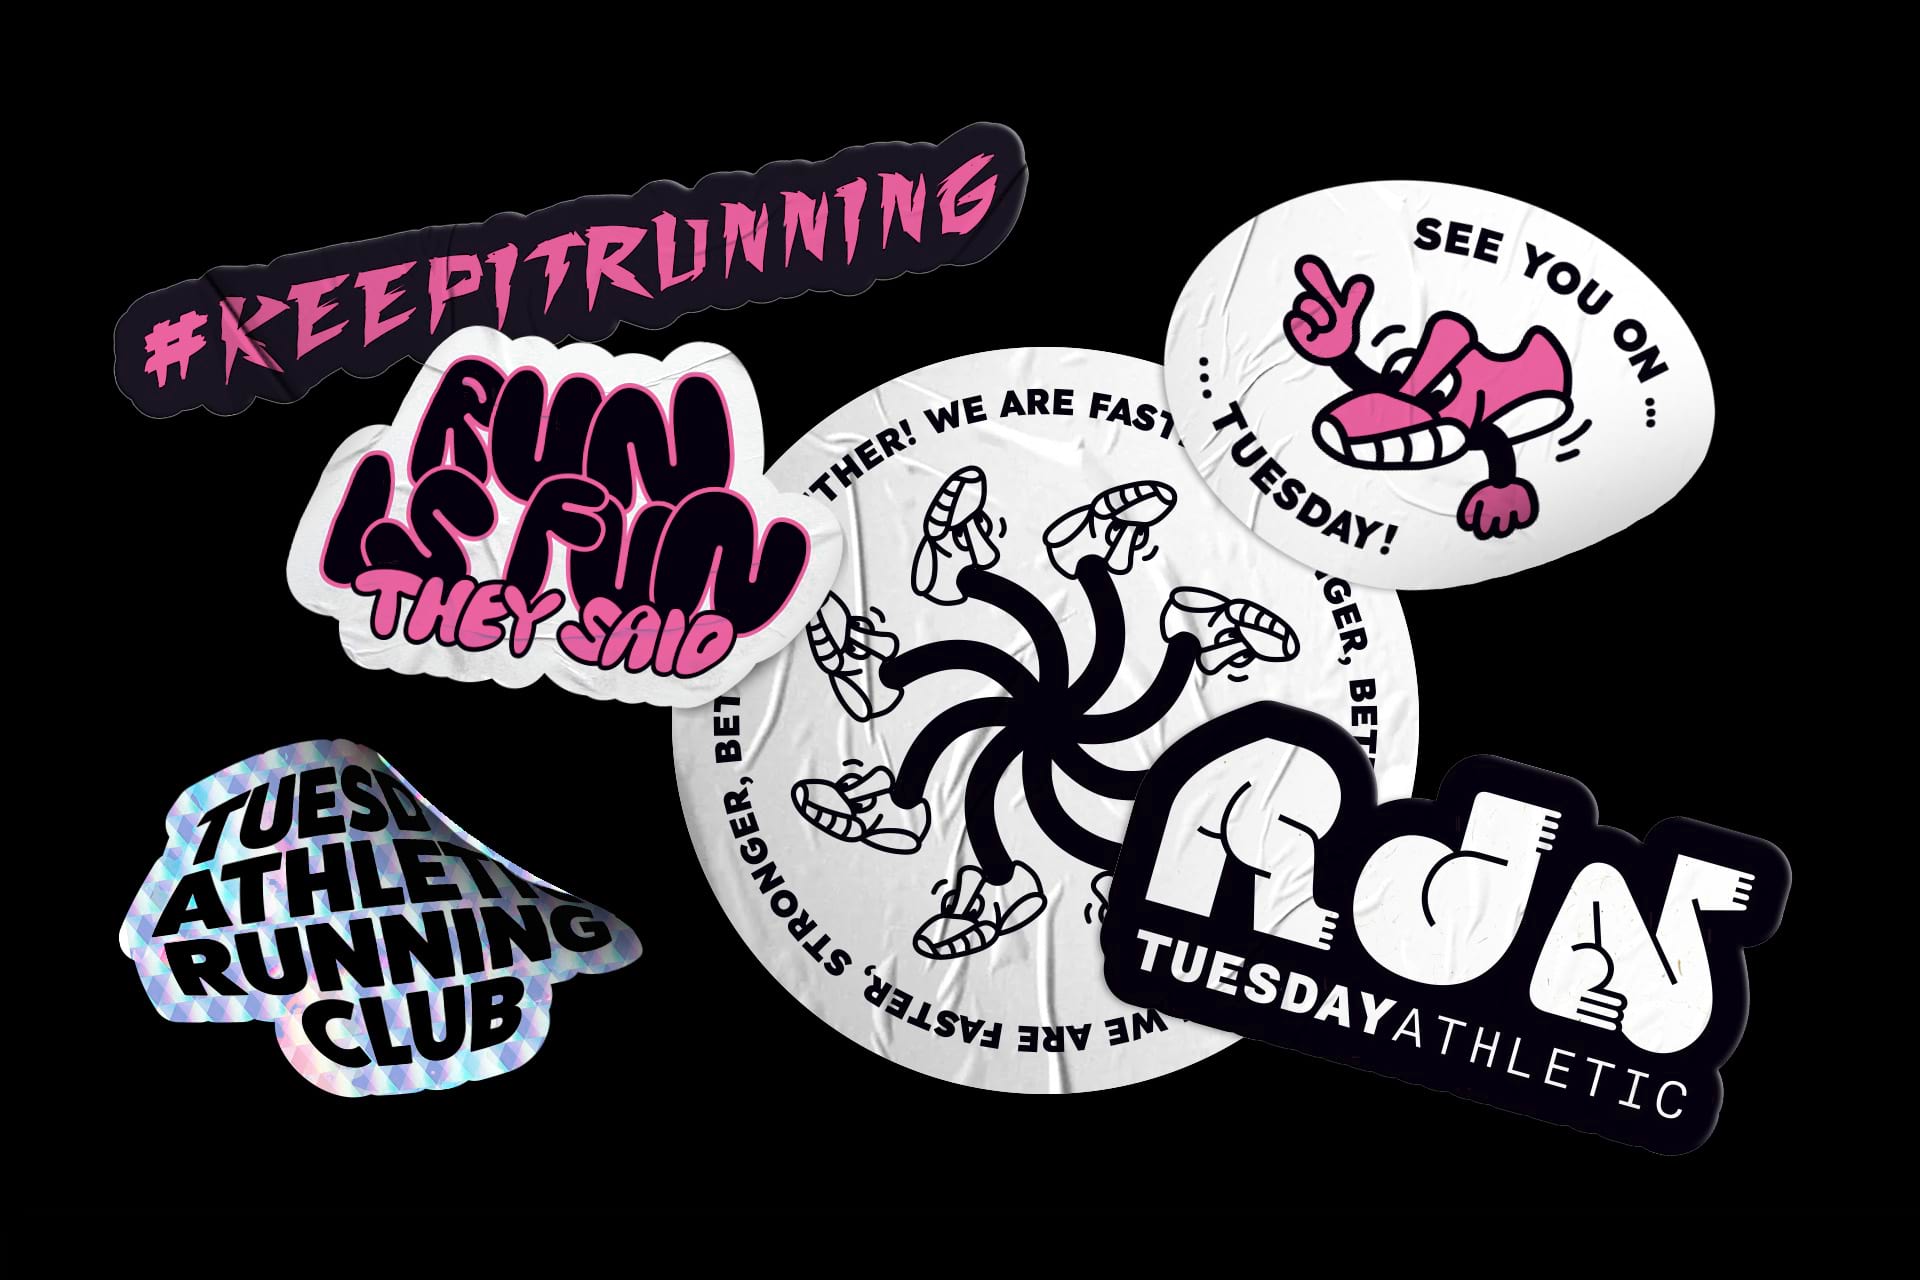 Tuesday Running Club